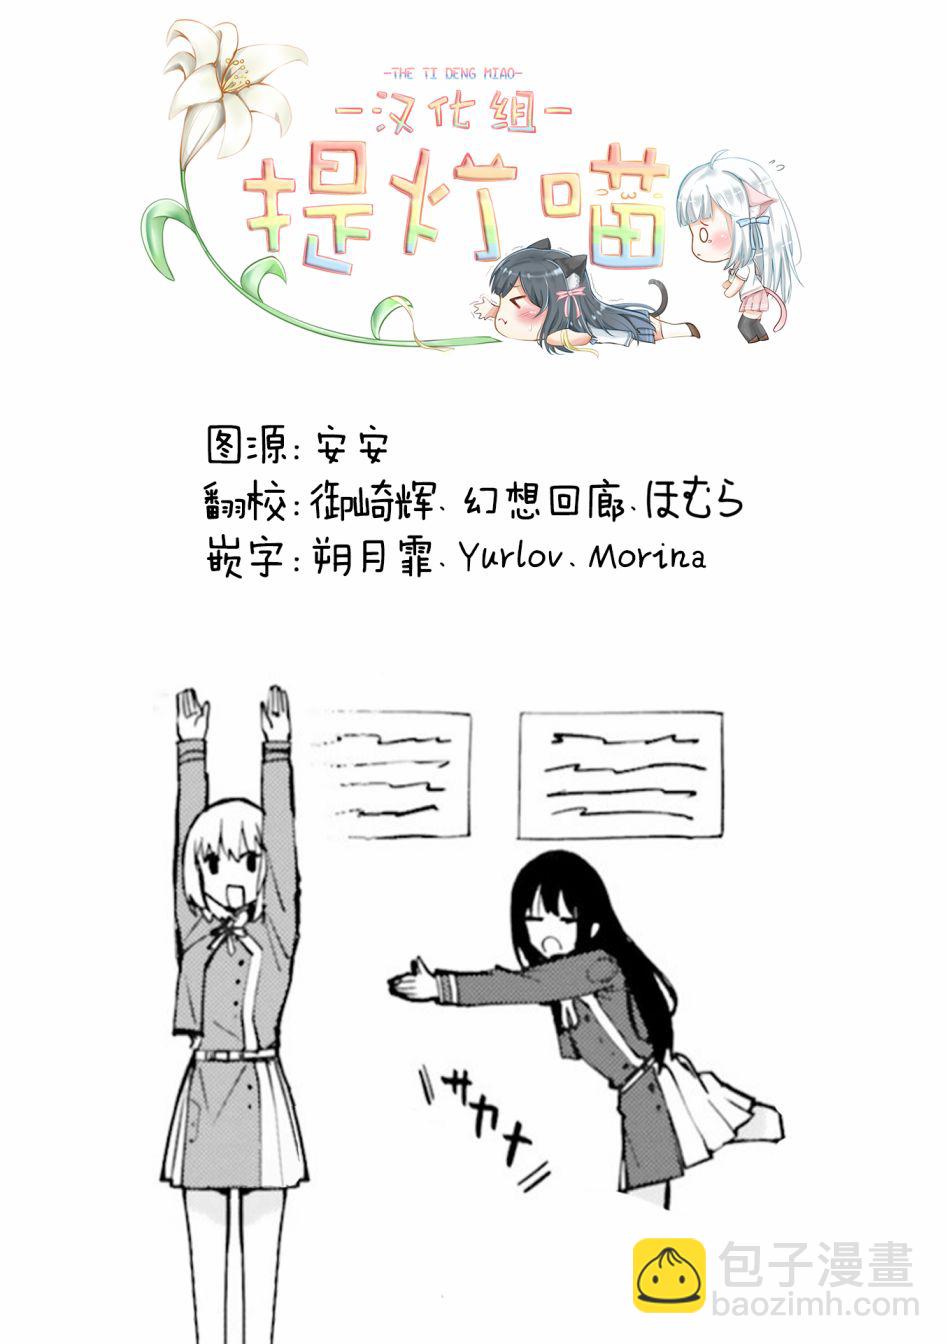 莉可麗絲 官方漫畫短篇集 - repeat - 3